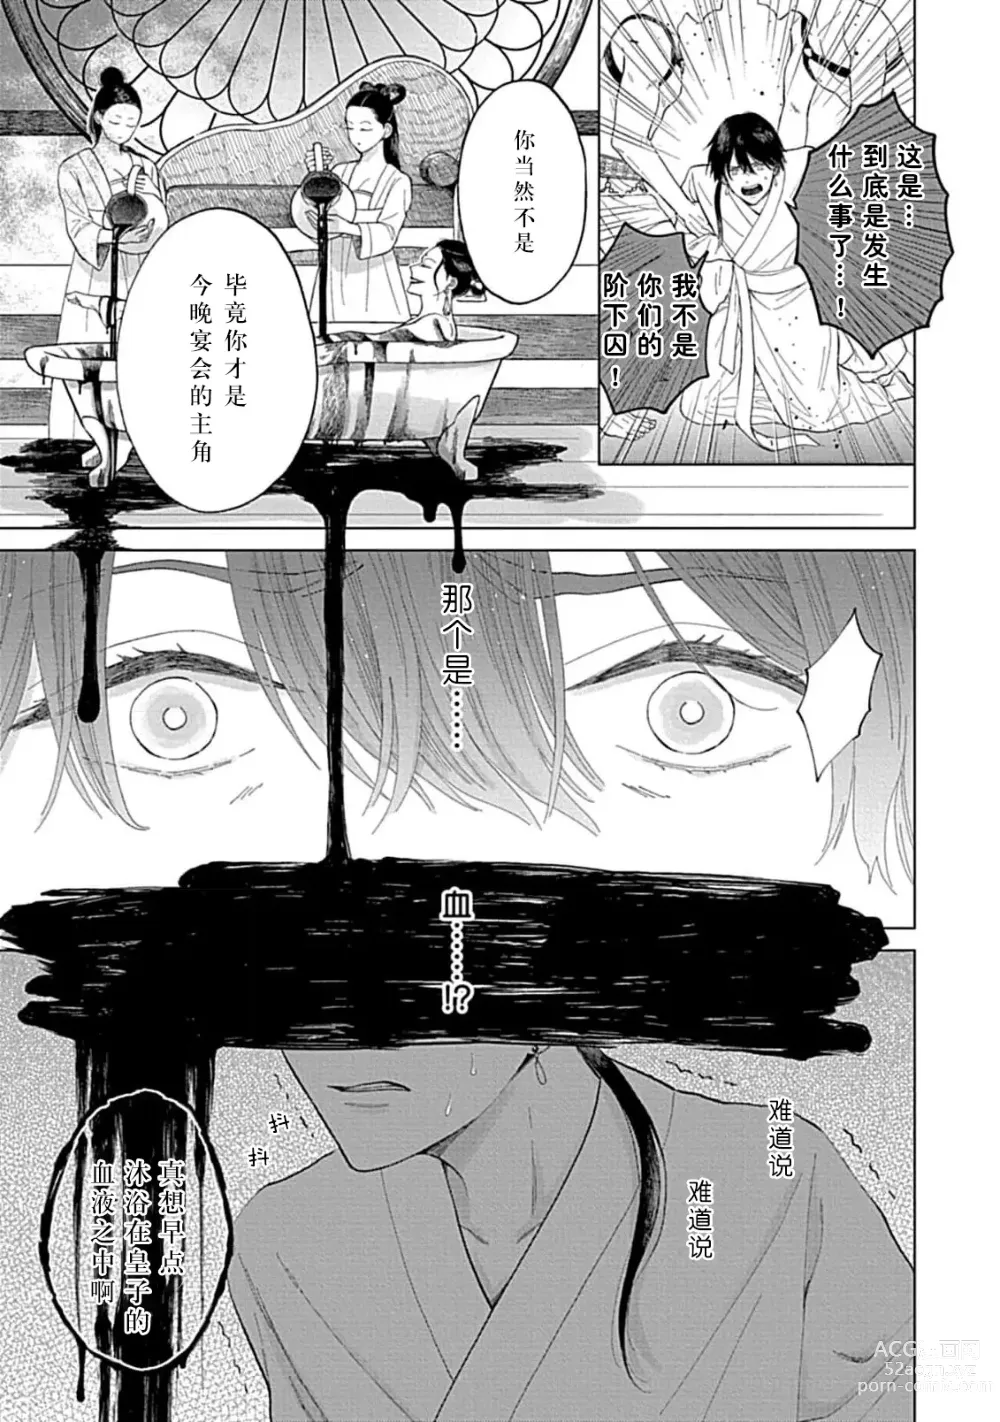 Page 25 of manga 花嫁的堇青石~篡位的狮子王和纯洁的皇子~ 1